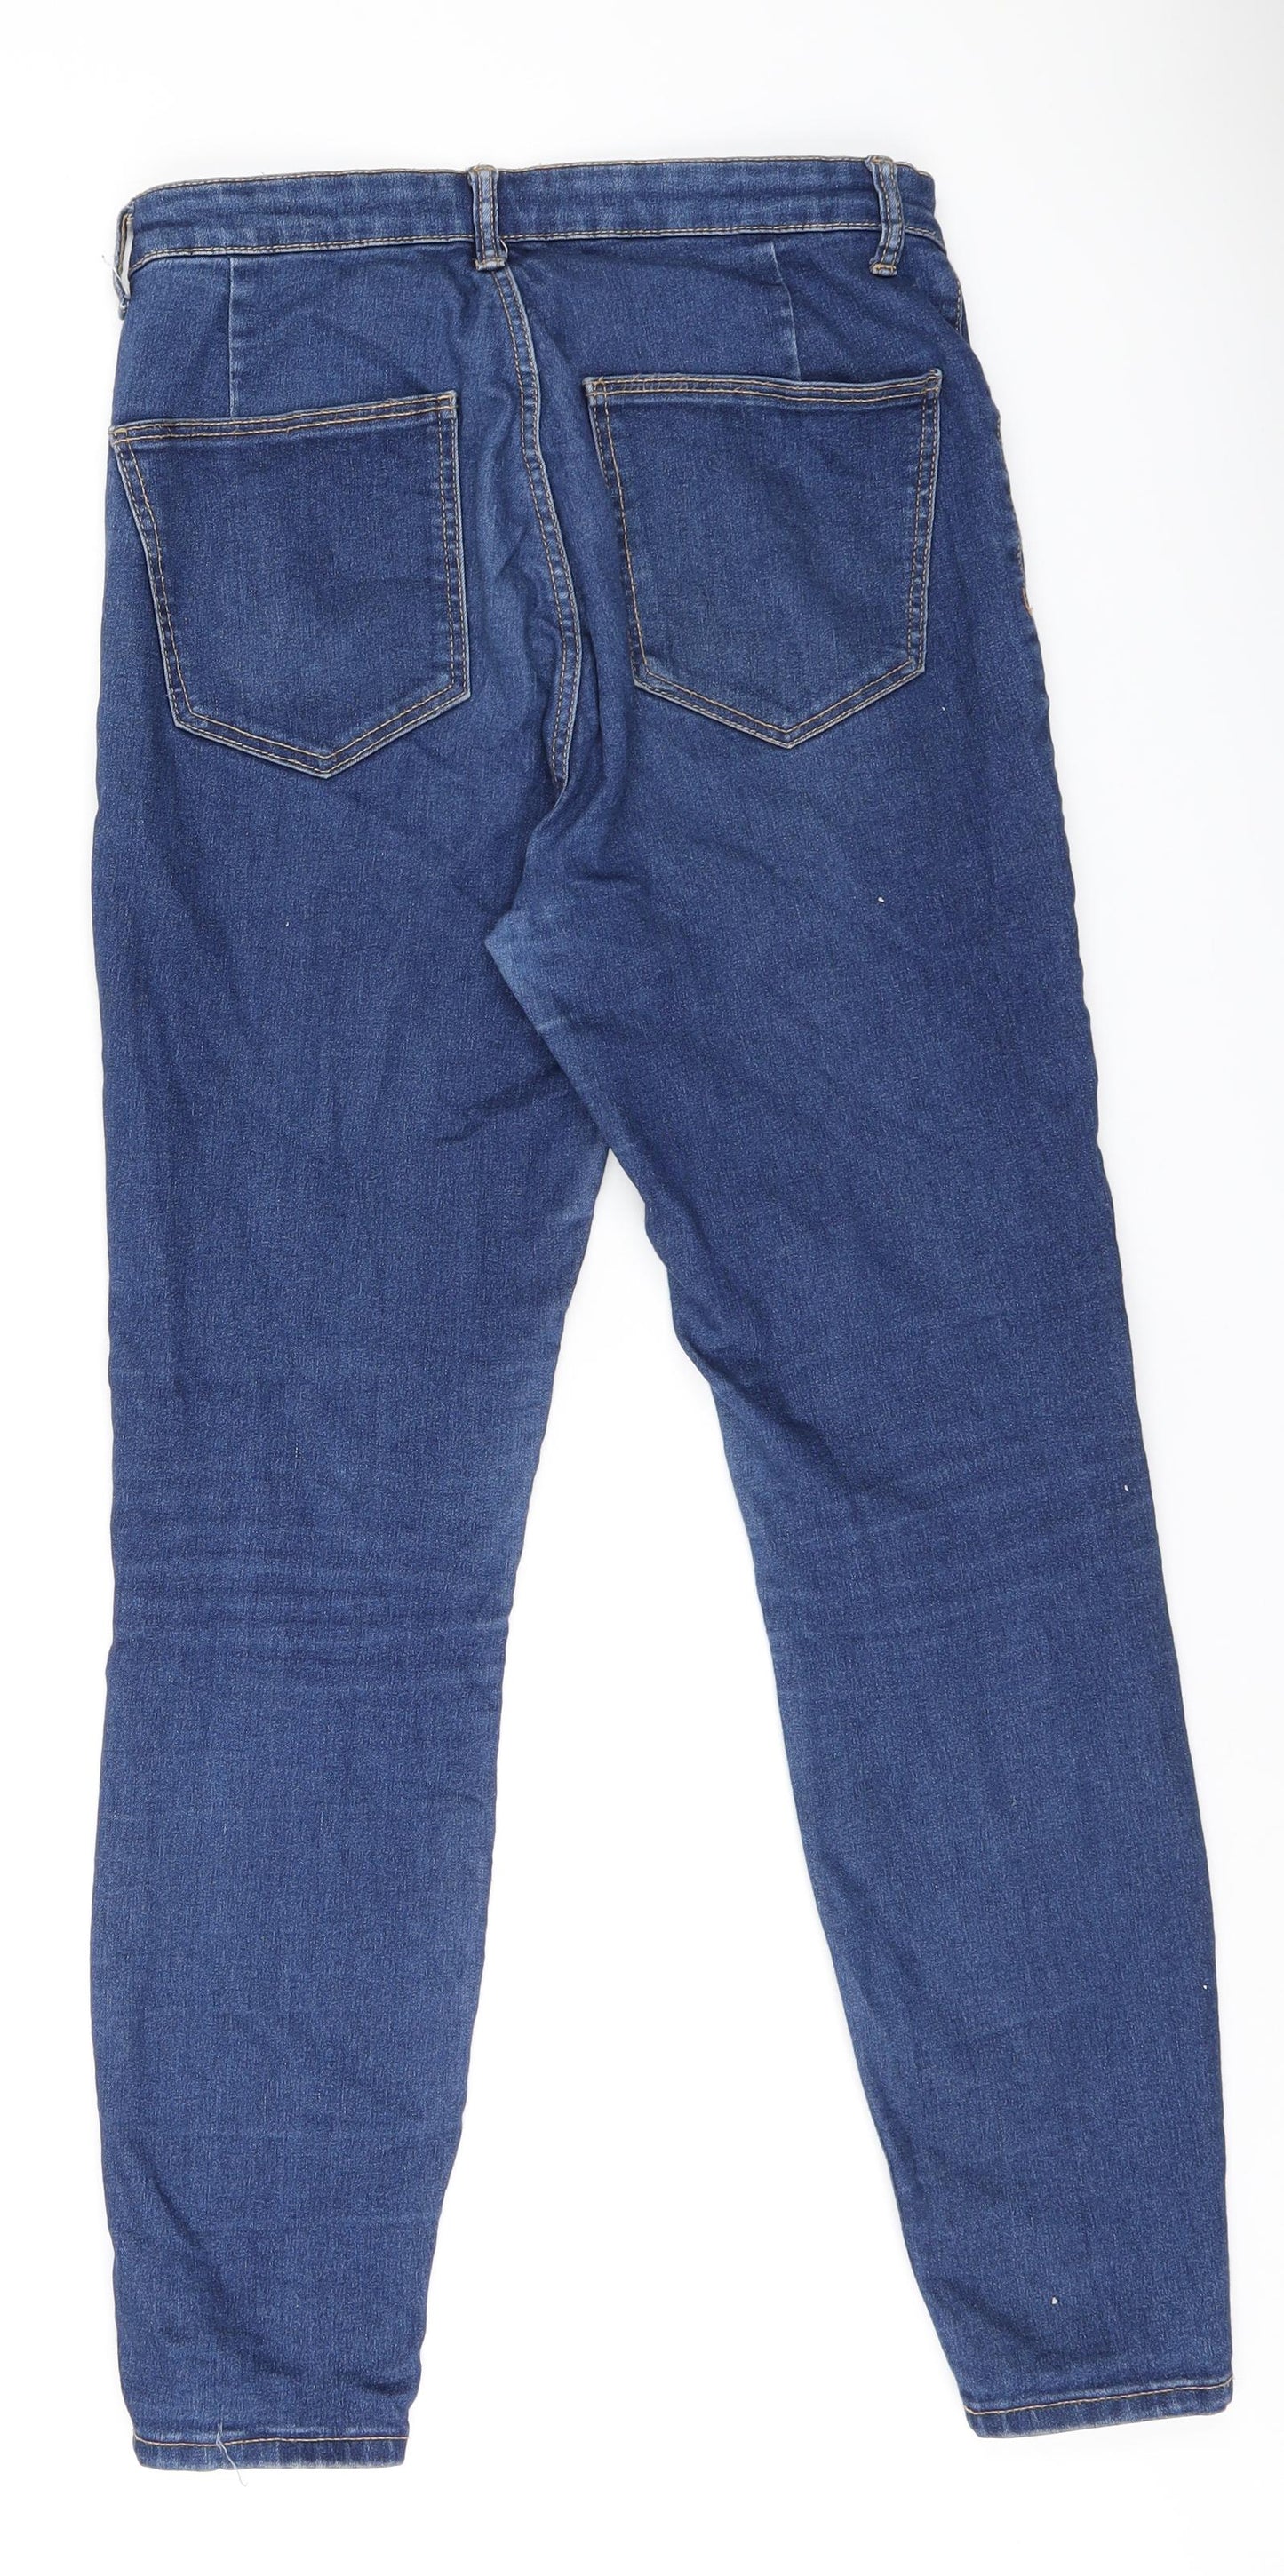 Zara Womens Blue Cotton Skinny Jeans Size 12 L27 in Regular Zip